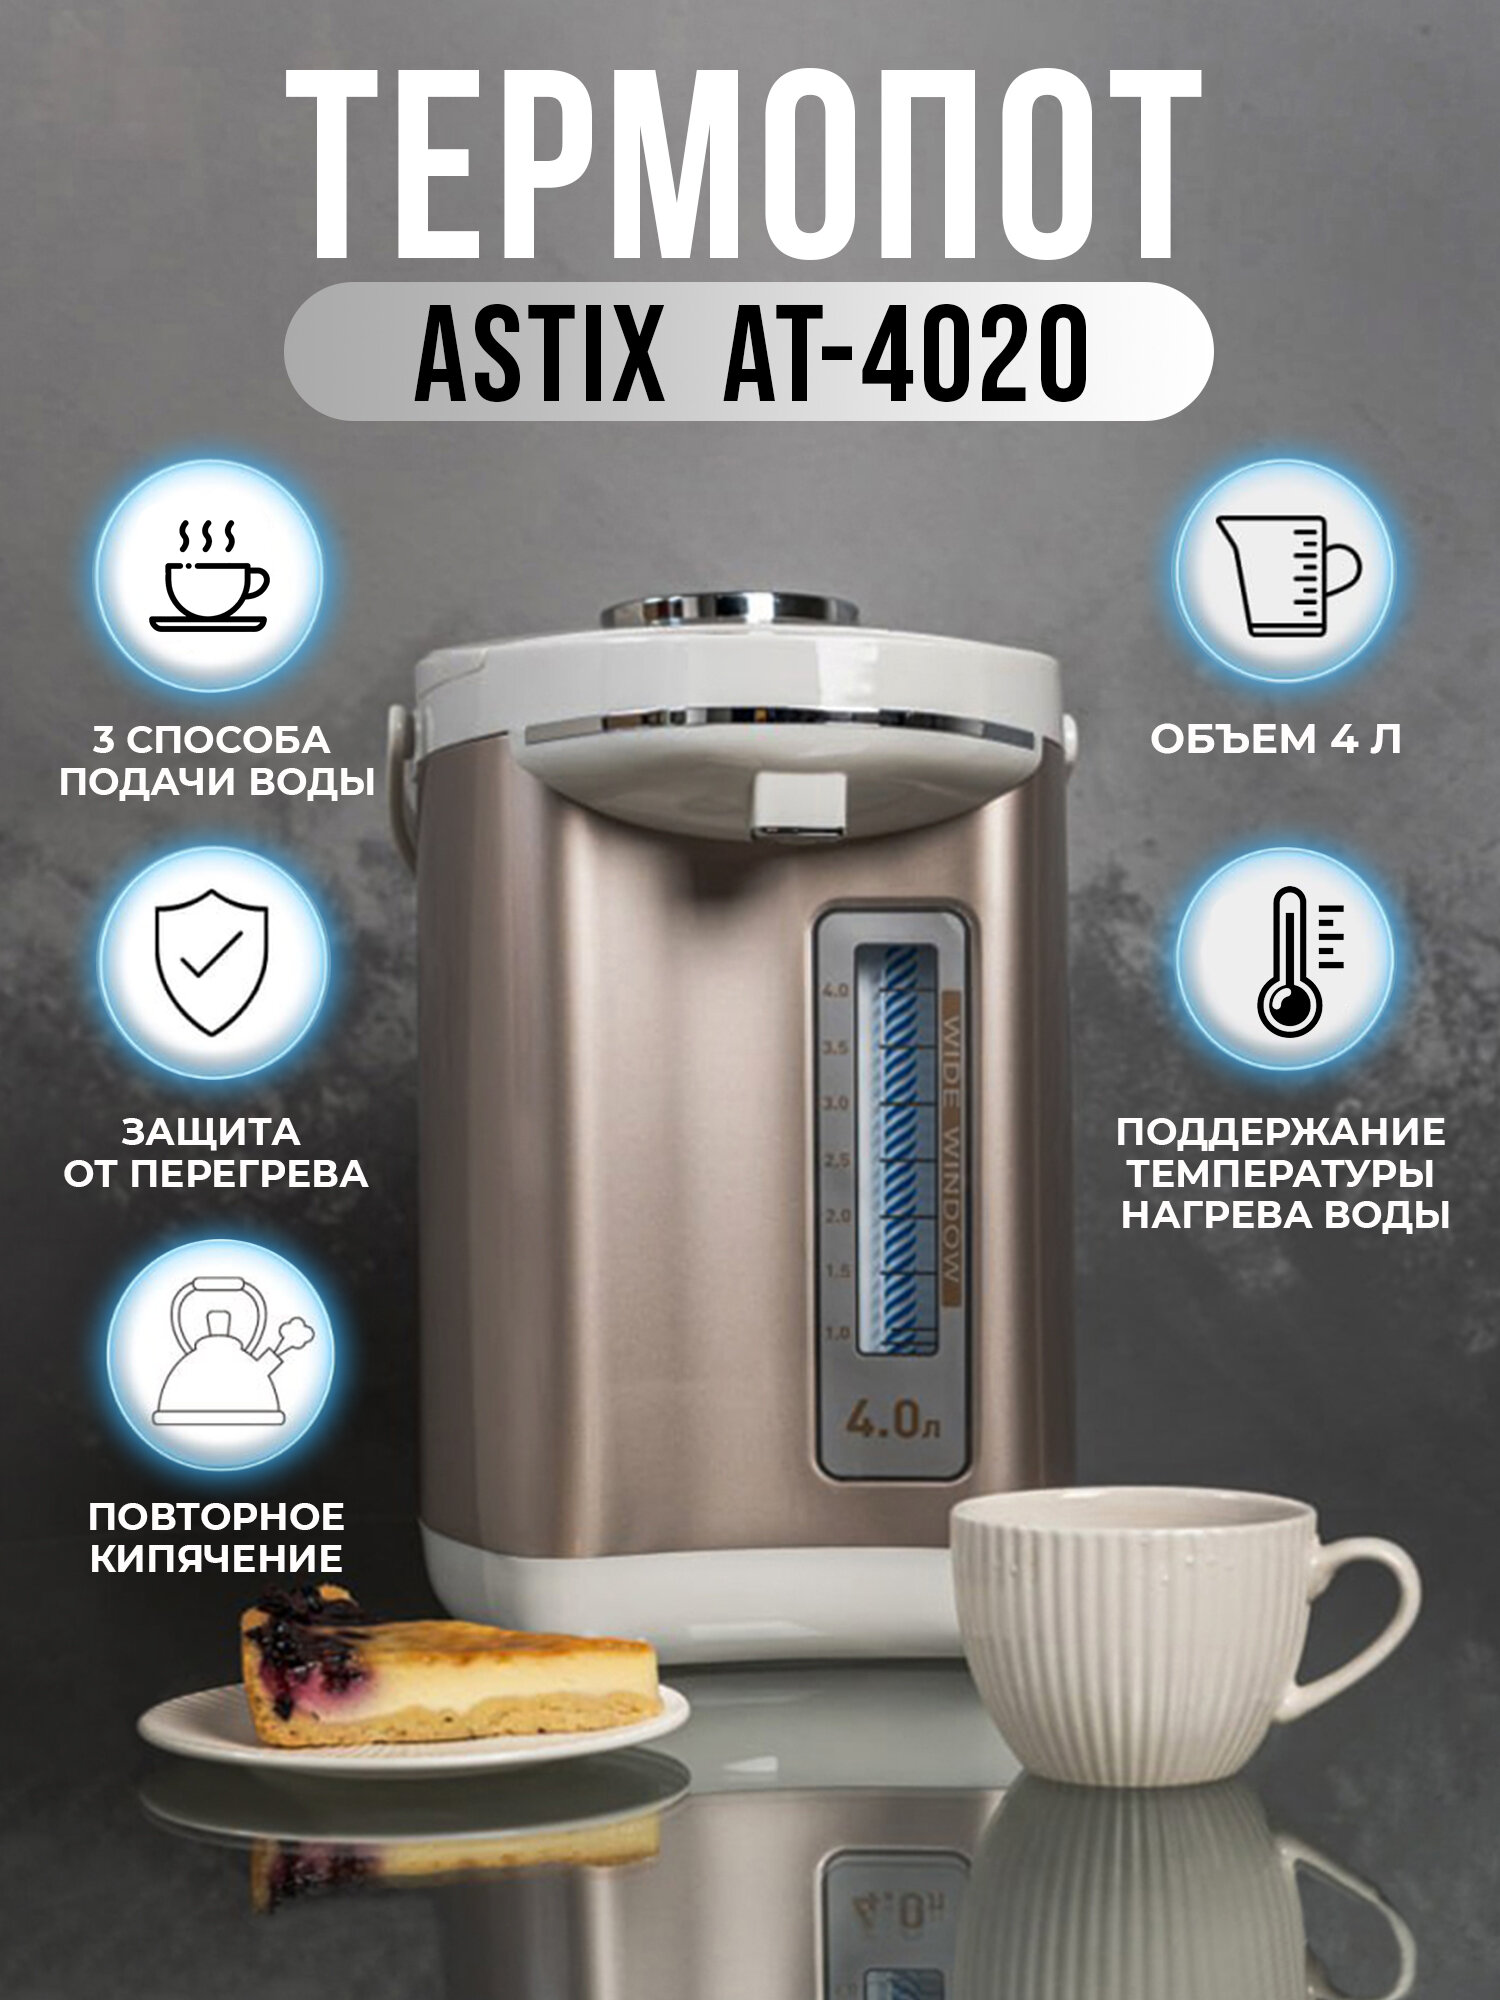 Термопот ASTIX AT-4020 объём 4 литра 3 способа подачи воды защита от перегрева поддержание температуры